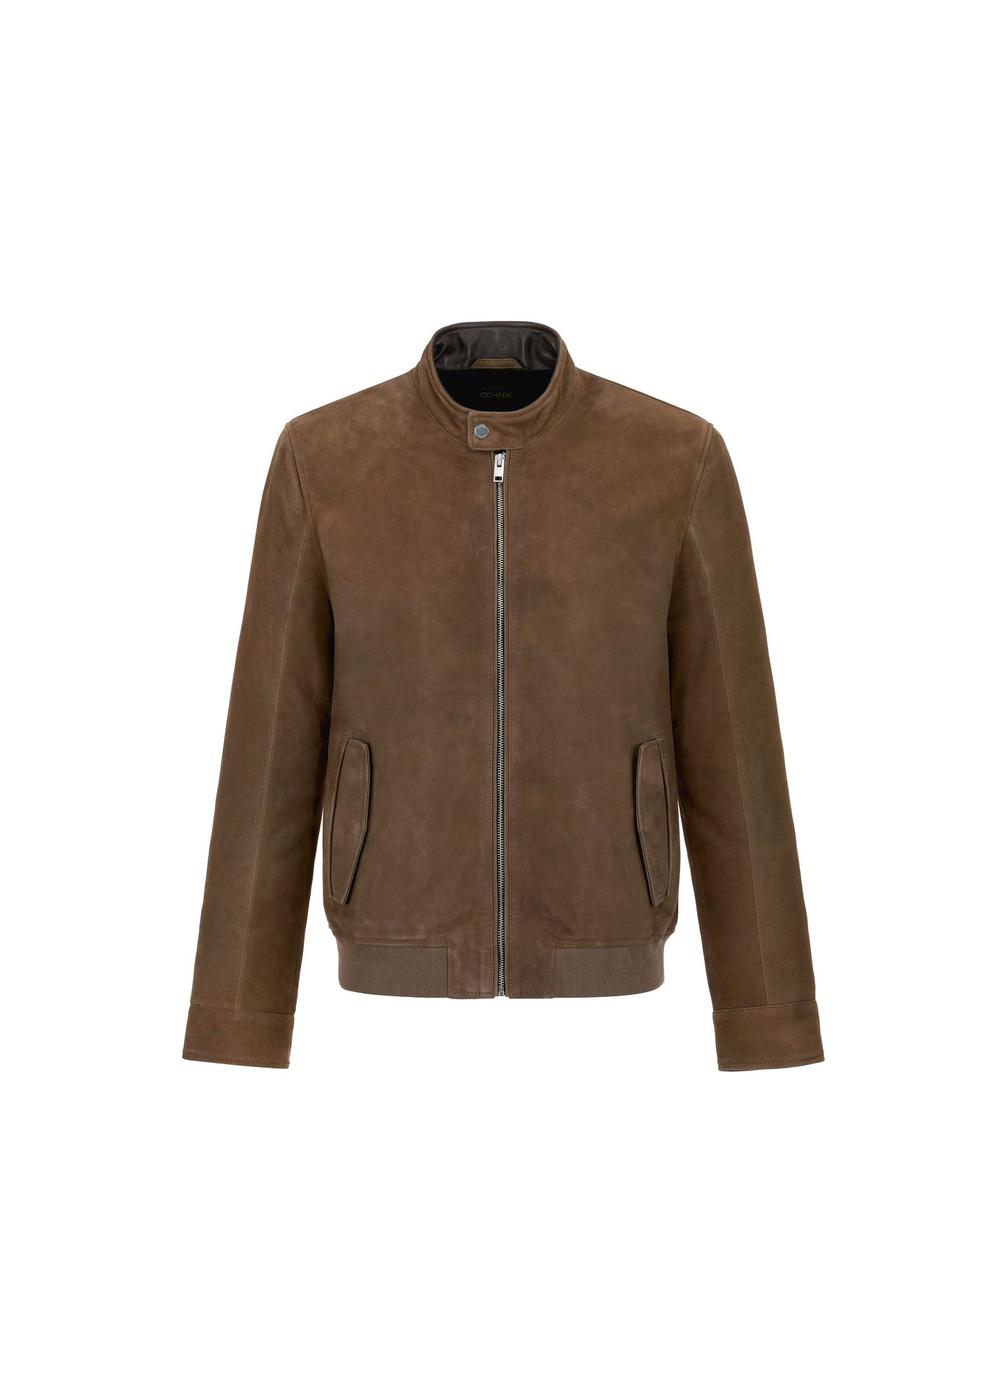 Skórzana kurtka męska w kolorze khaki KURMS-0331-1358(W24)